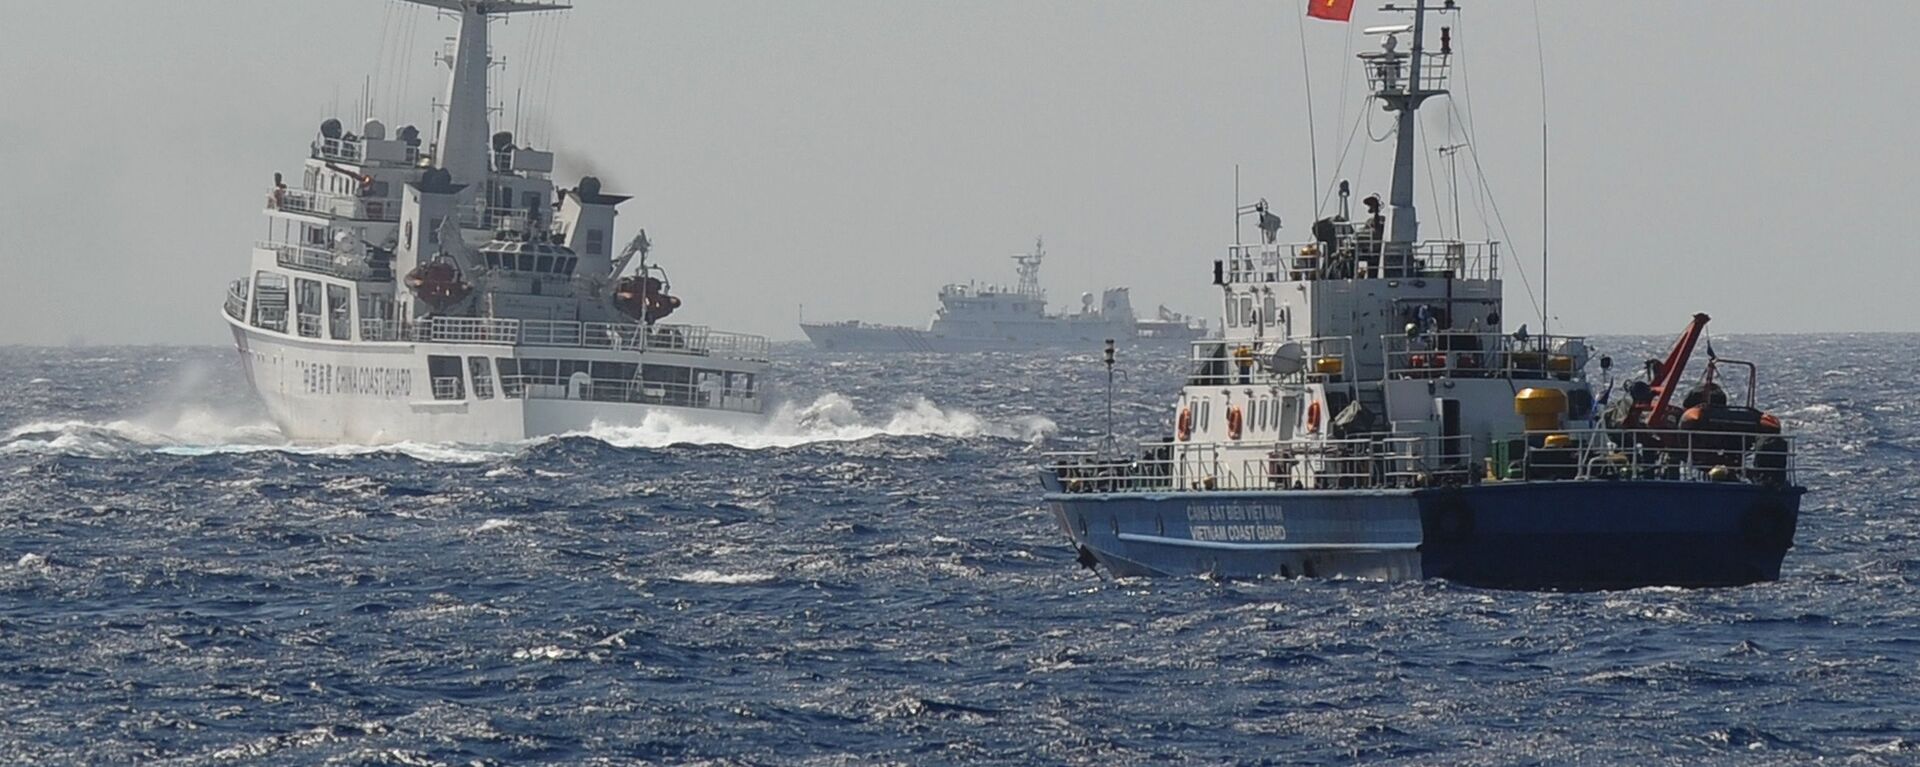 Tàu Cảnh sát biển Việt Nam và Trung Quốc gần vị trí đặt giàn khoan dầu của Trung Quốc trên Biển Đông - Sputnik Việt Nam, 1920, 03.12.2021